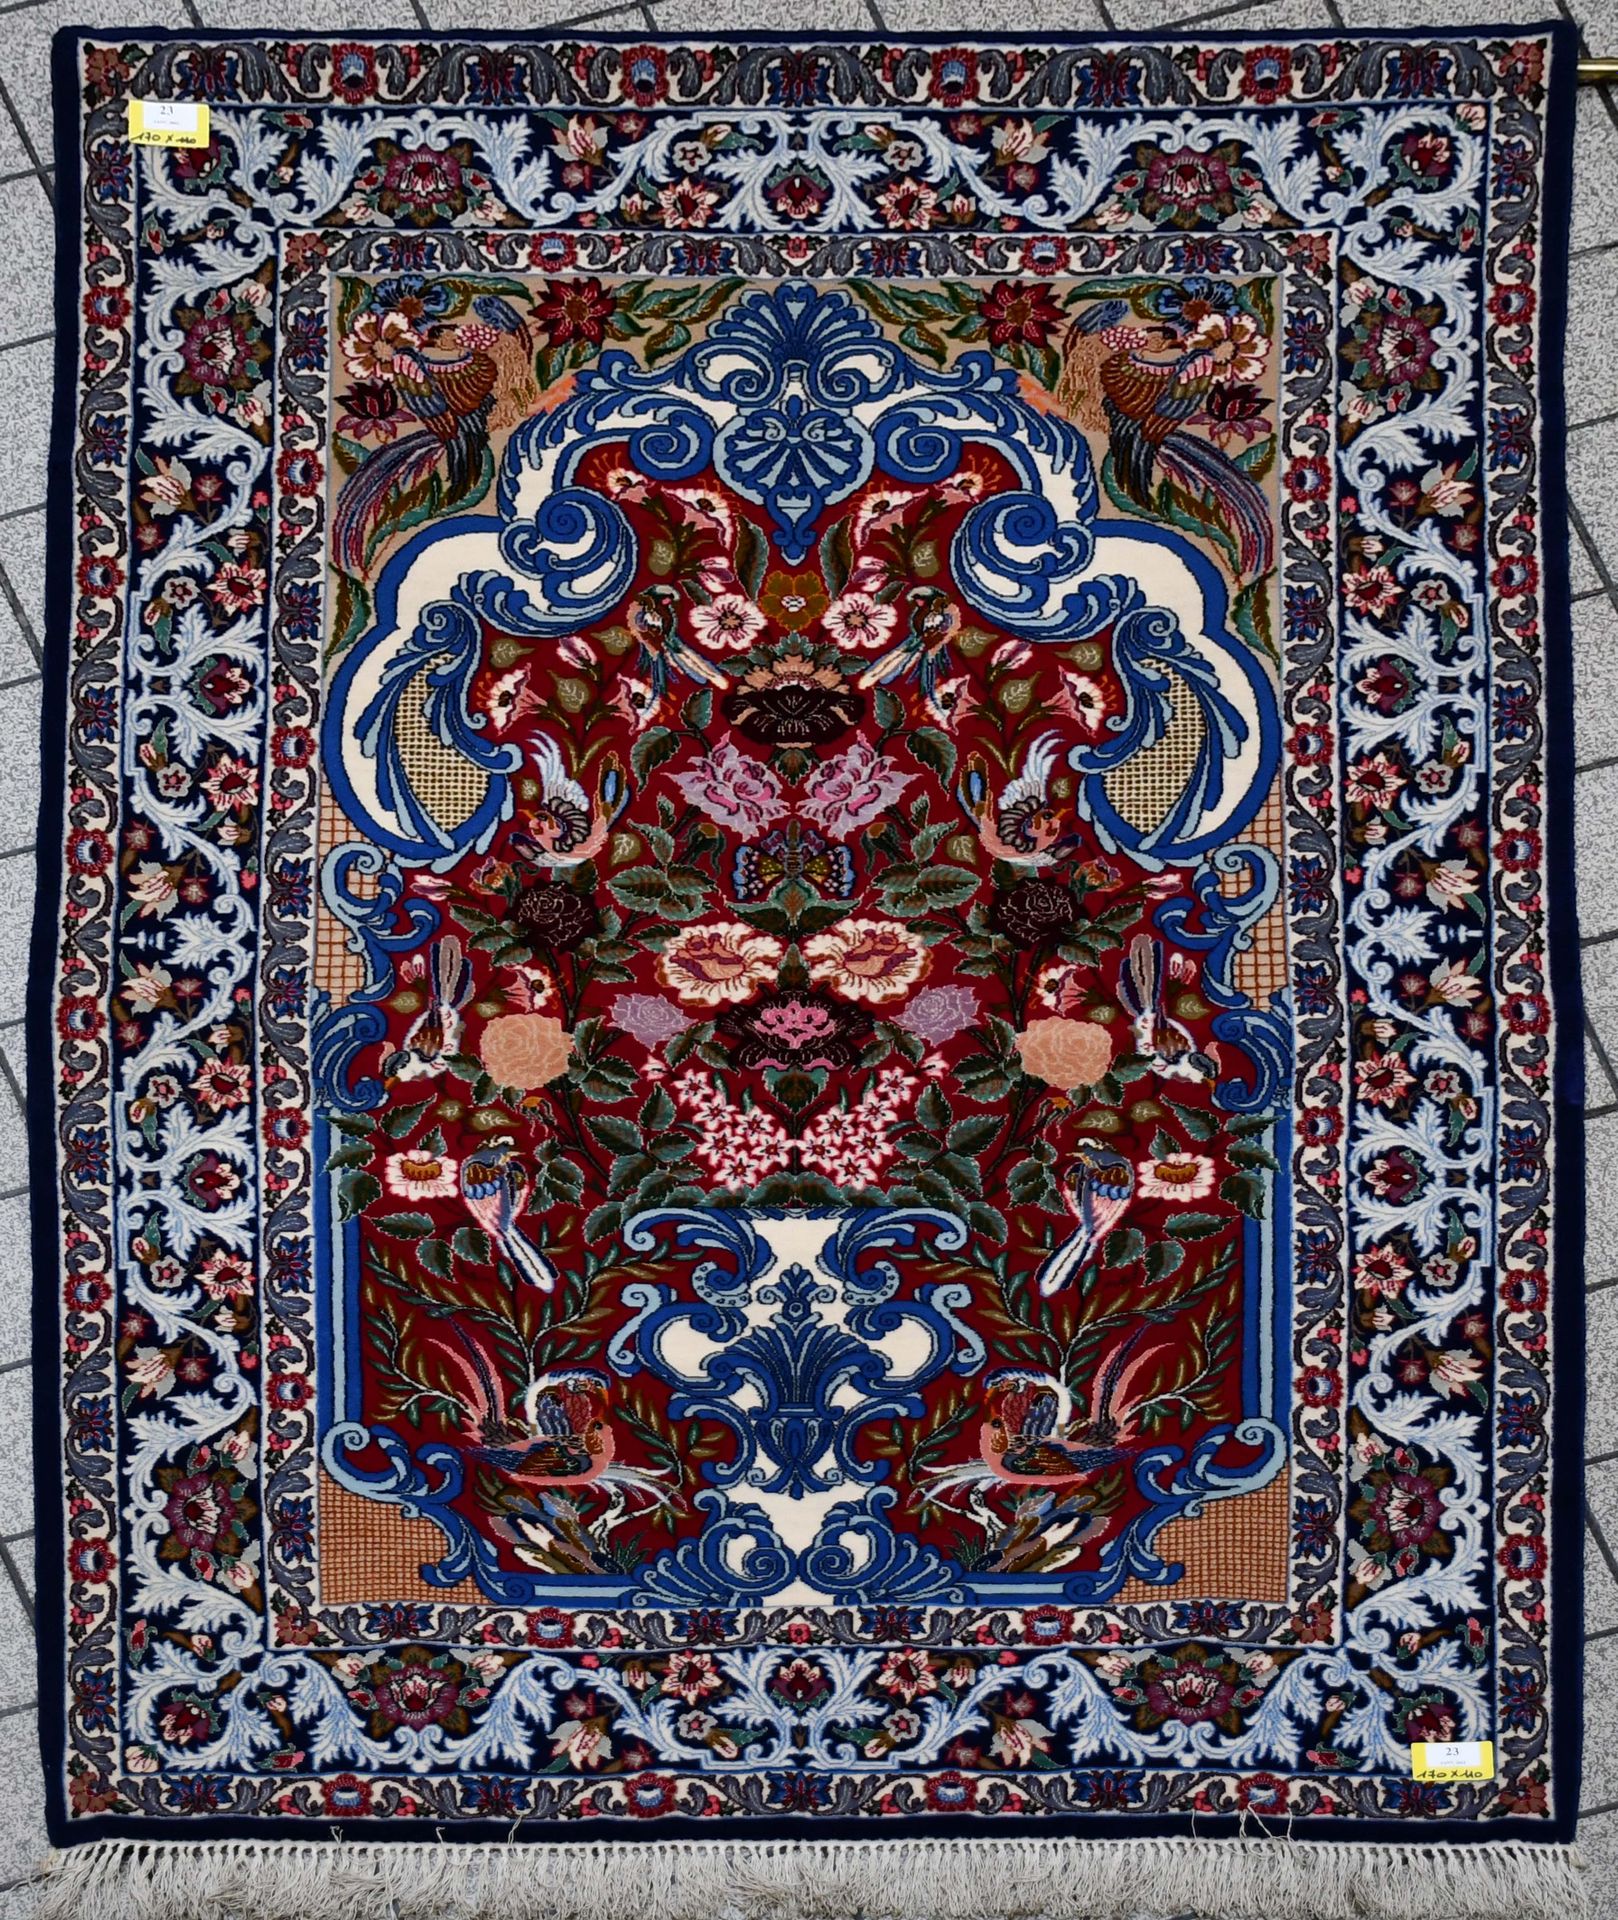 Null Teppich

Feiner iranischer Orientteppich zum Beten.

Maße: 170 cm x 110 cm.